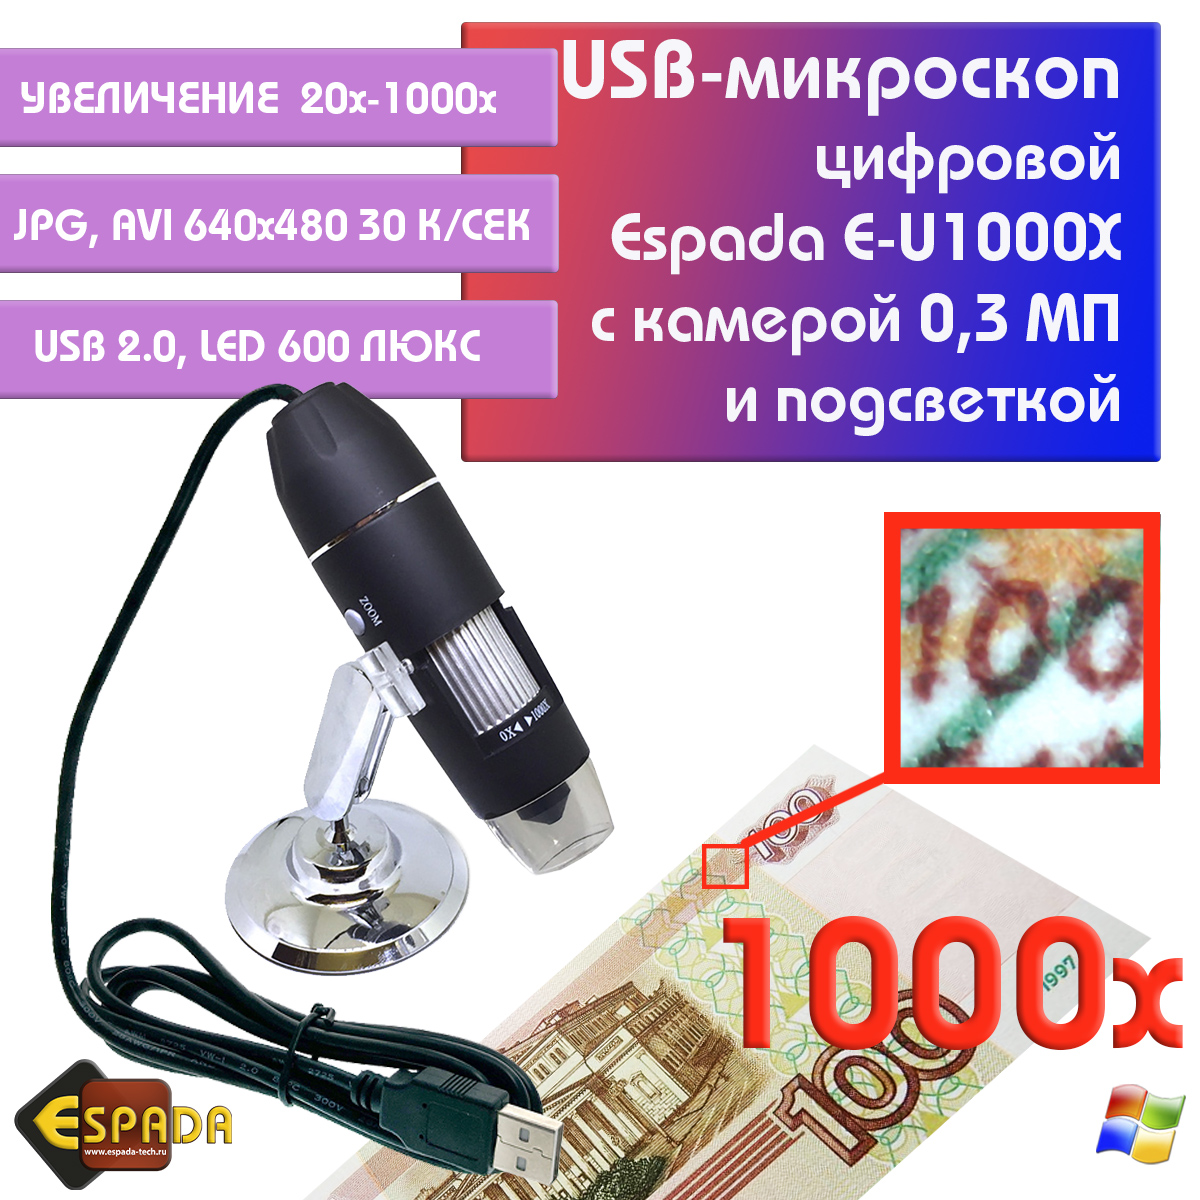 Портативный цифровой USB-микроскоп Espada E-U1000X c камерой 0,3 МП и увеличением 1000x микроскоп монокуляр espada usb g1200b с дисплеем 7 и подставкой